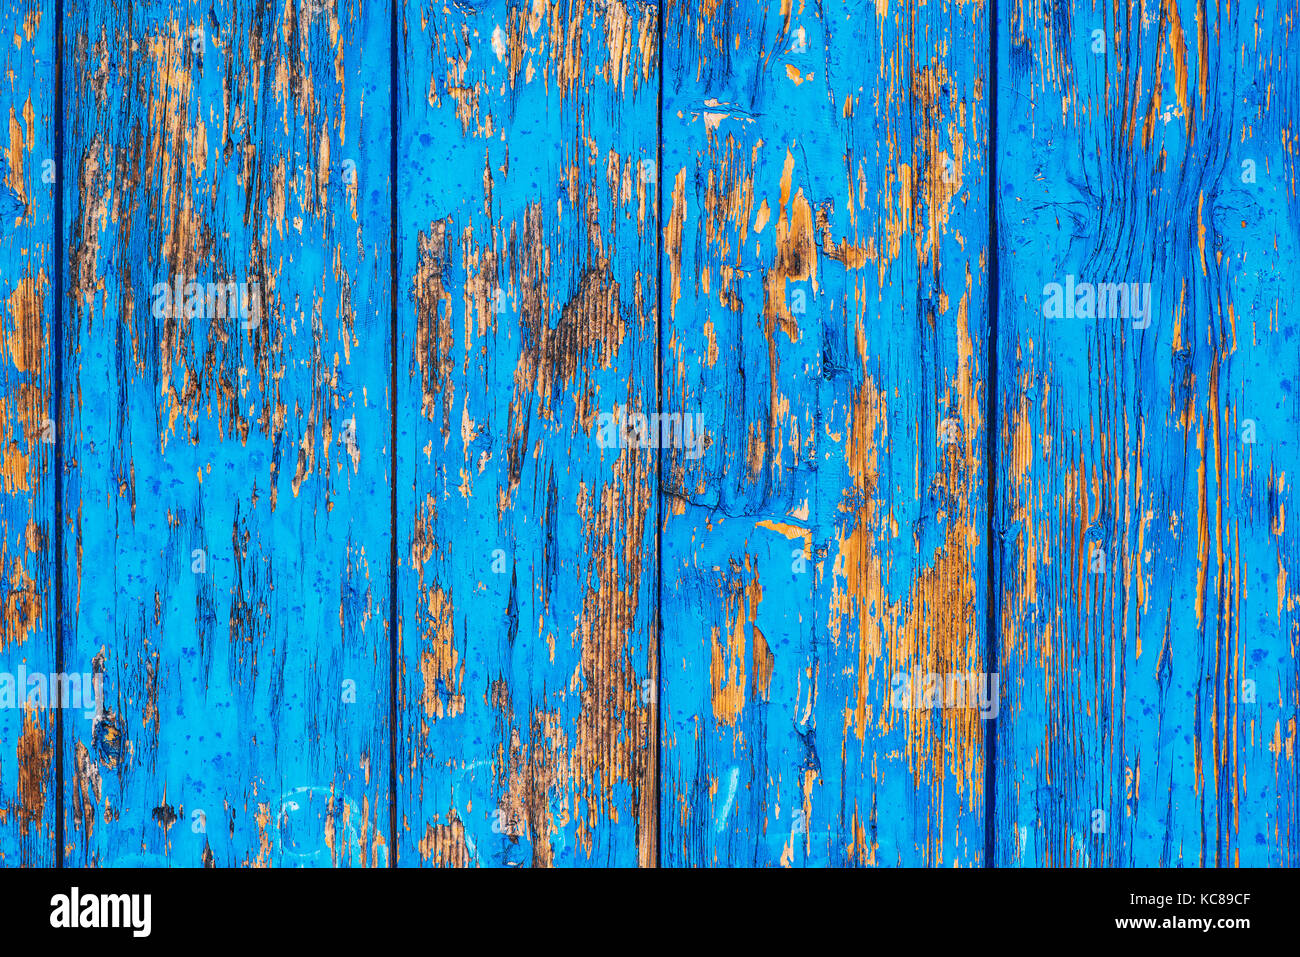 Tiempo gastado azul con pintura de textura de madera pelando la superficie, rústico y envejecido y patrones de fondo Foto de stock